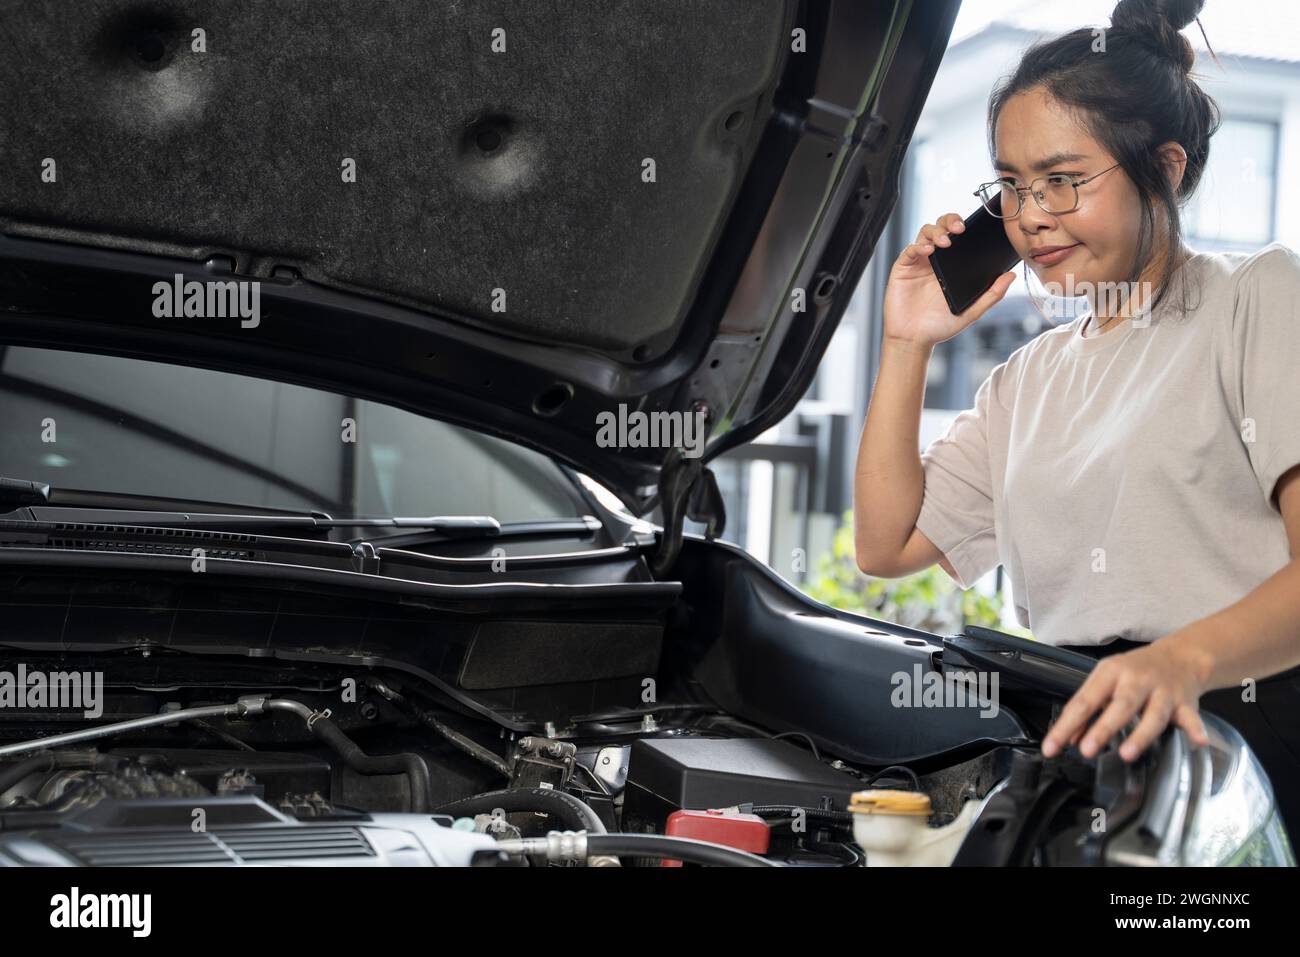 Hai bisogno di aiuto con il guasto dell'auto donna seria ascolta i consigli e la spiegazione del servizio di riparazione auto di emergenza al telefono. Foto Stock